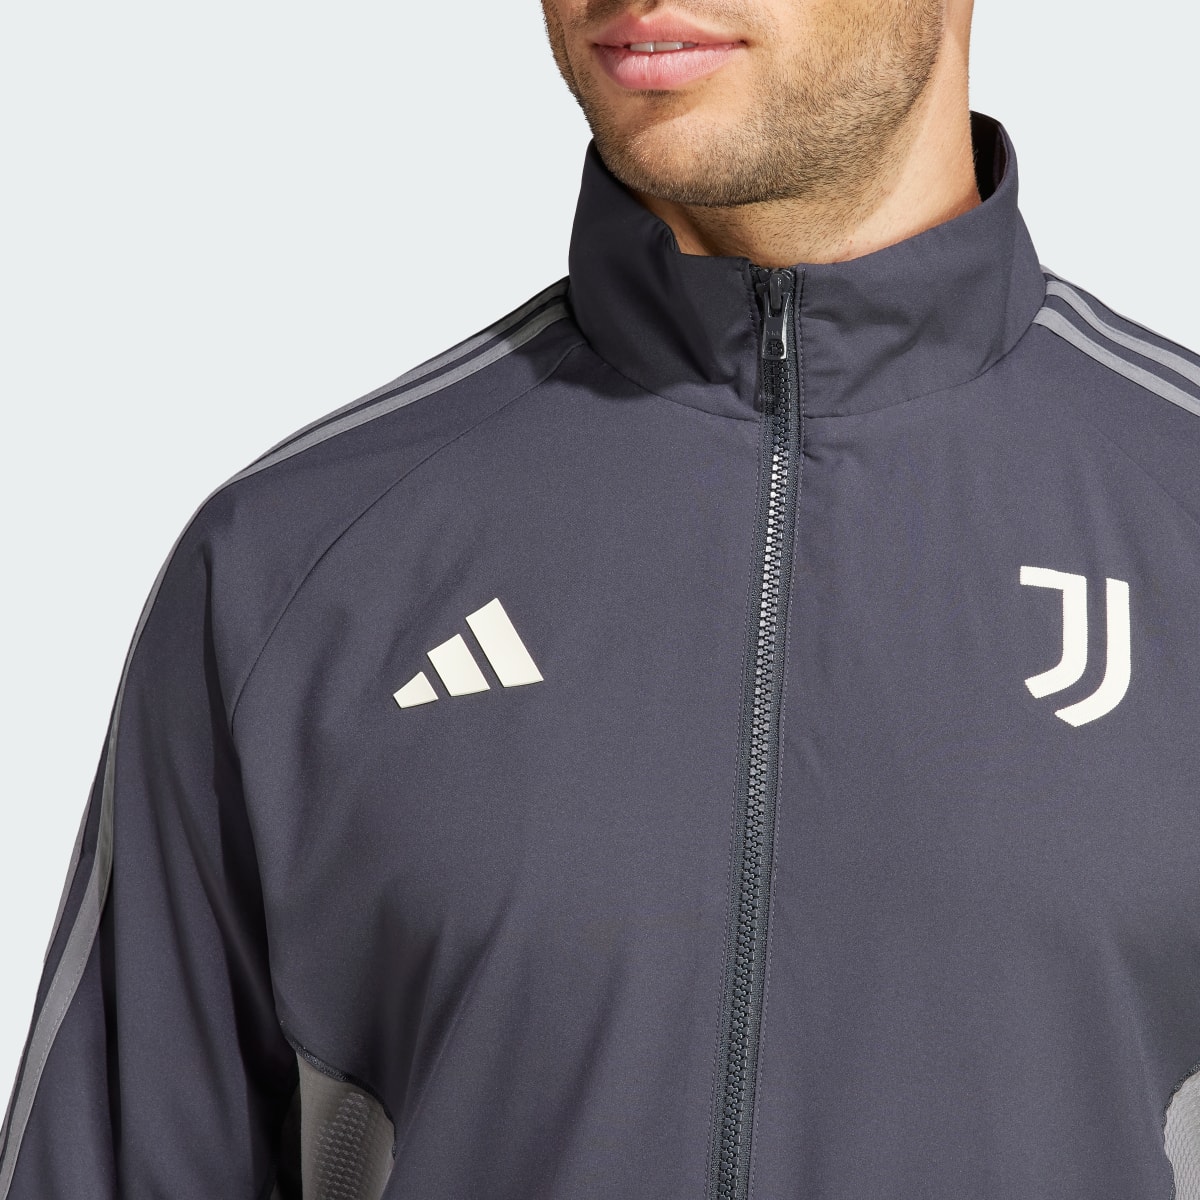 Adidas Juventus Anthem Jacket. 8